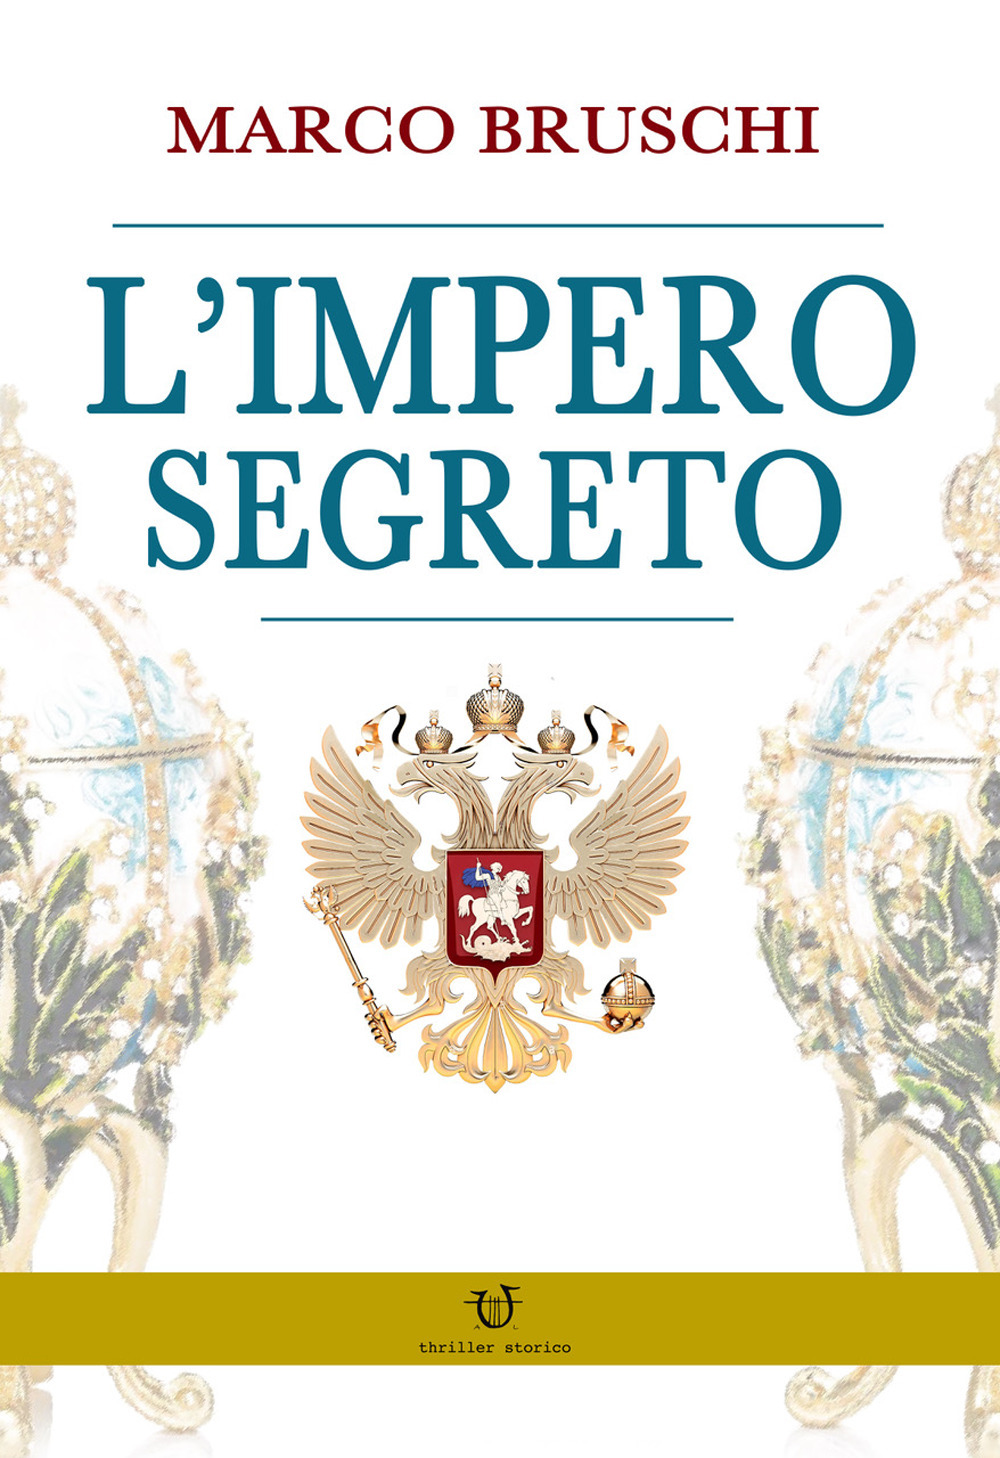 Libri Marco Bruschi - L' Impero Segreto NUOVO SIGILLATO, EDIZIONE DEL 19/12/2019 SUBITO DISPONIBILE